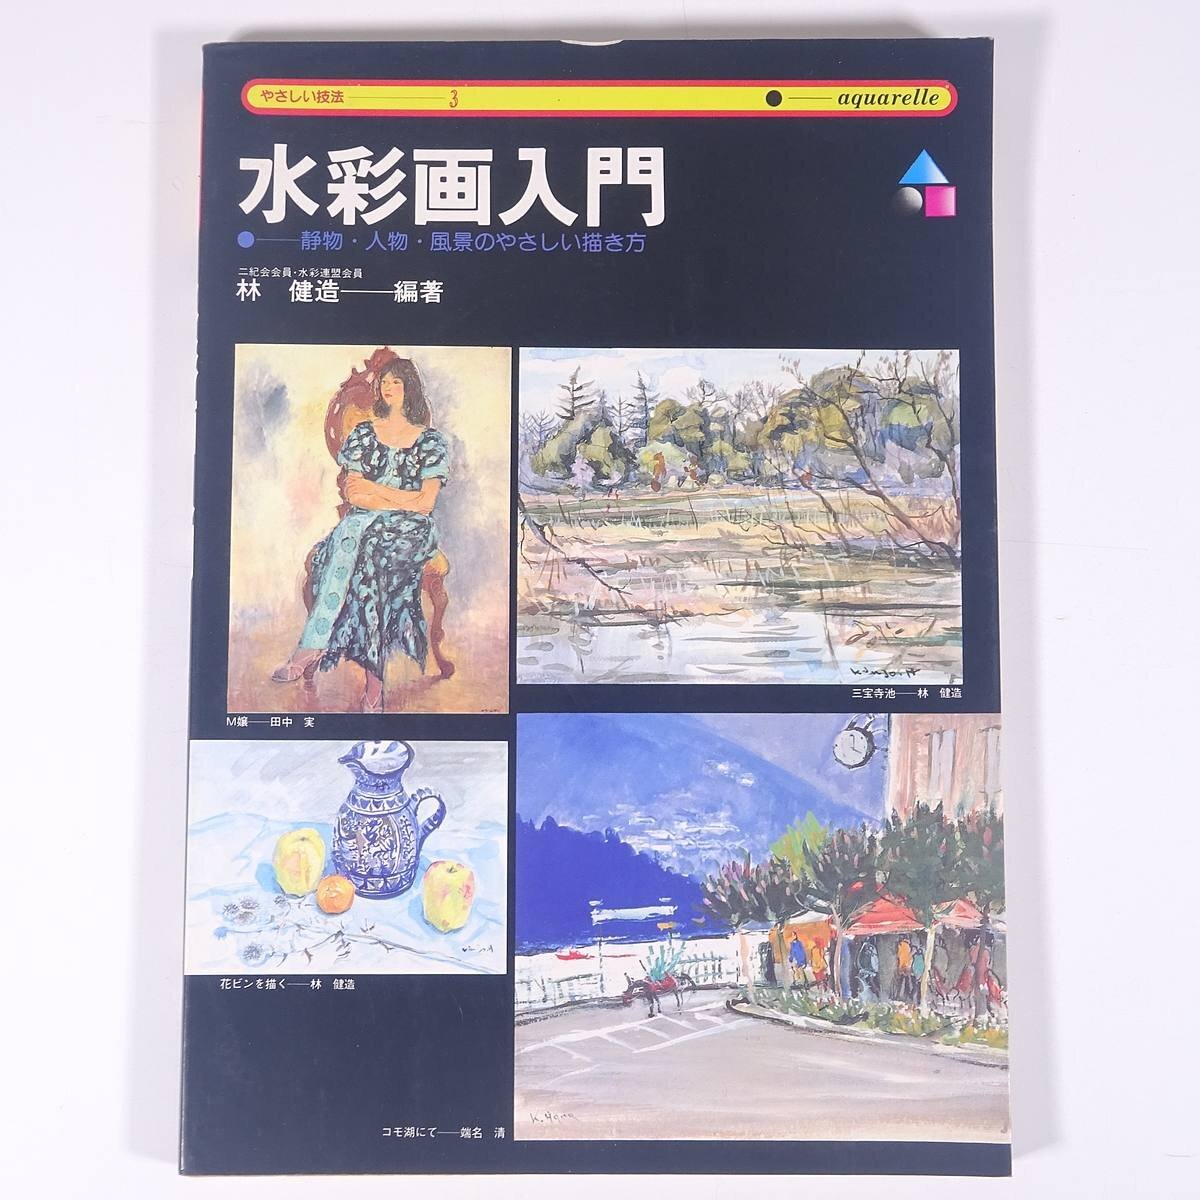 مقدمة إلى الرسم بالألوان المائية تم تحريره بواسطة كينزو هاياشي تقنيات سهلة 3 Nagaoka Shoten 1979 كتاب كبير فن الرسم الفني كتاب تقنيات الرسم بالألوان المائية, فن, ترفيه, تلوين, كتاب التقنية